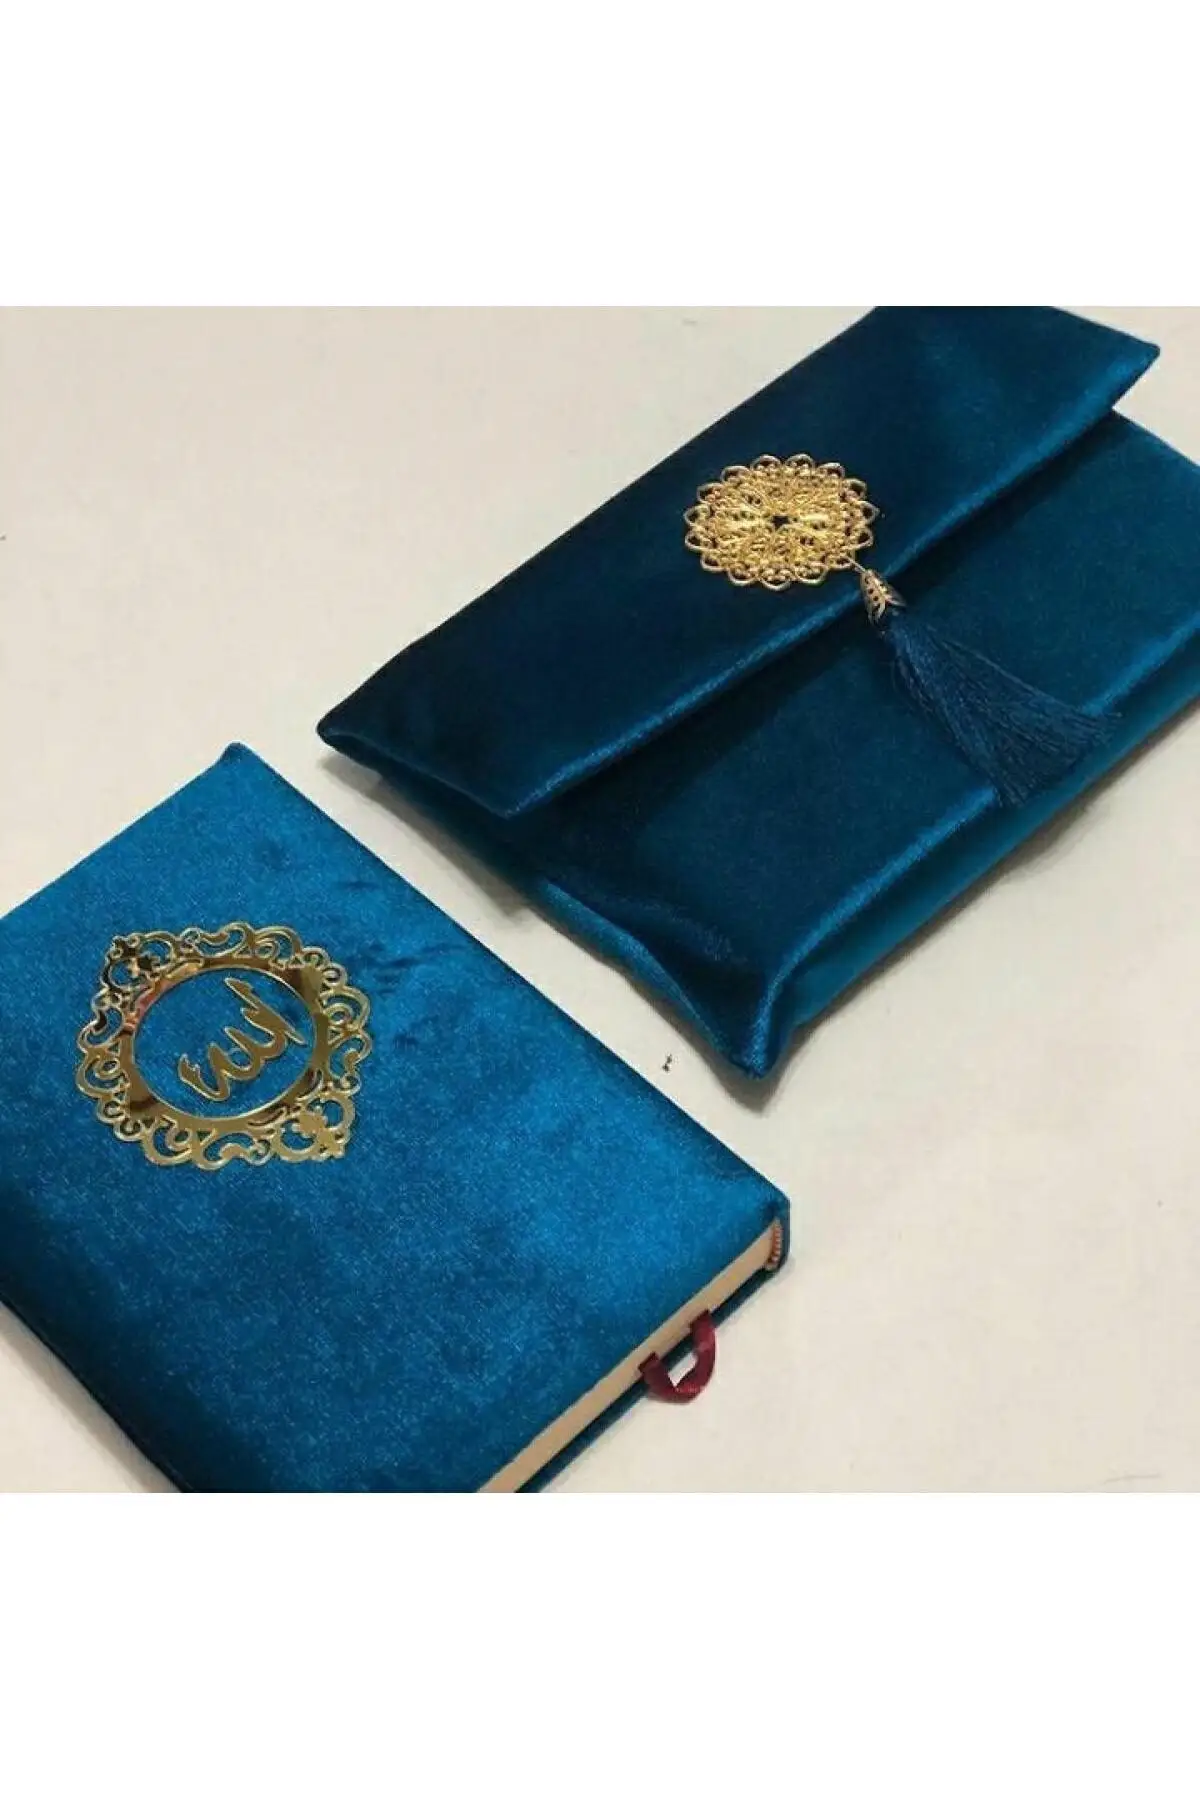 

Священный Коран с сумкой для мальчика Хафиза, темно-синий, Исламский подарок